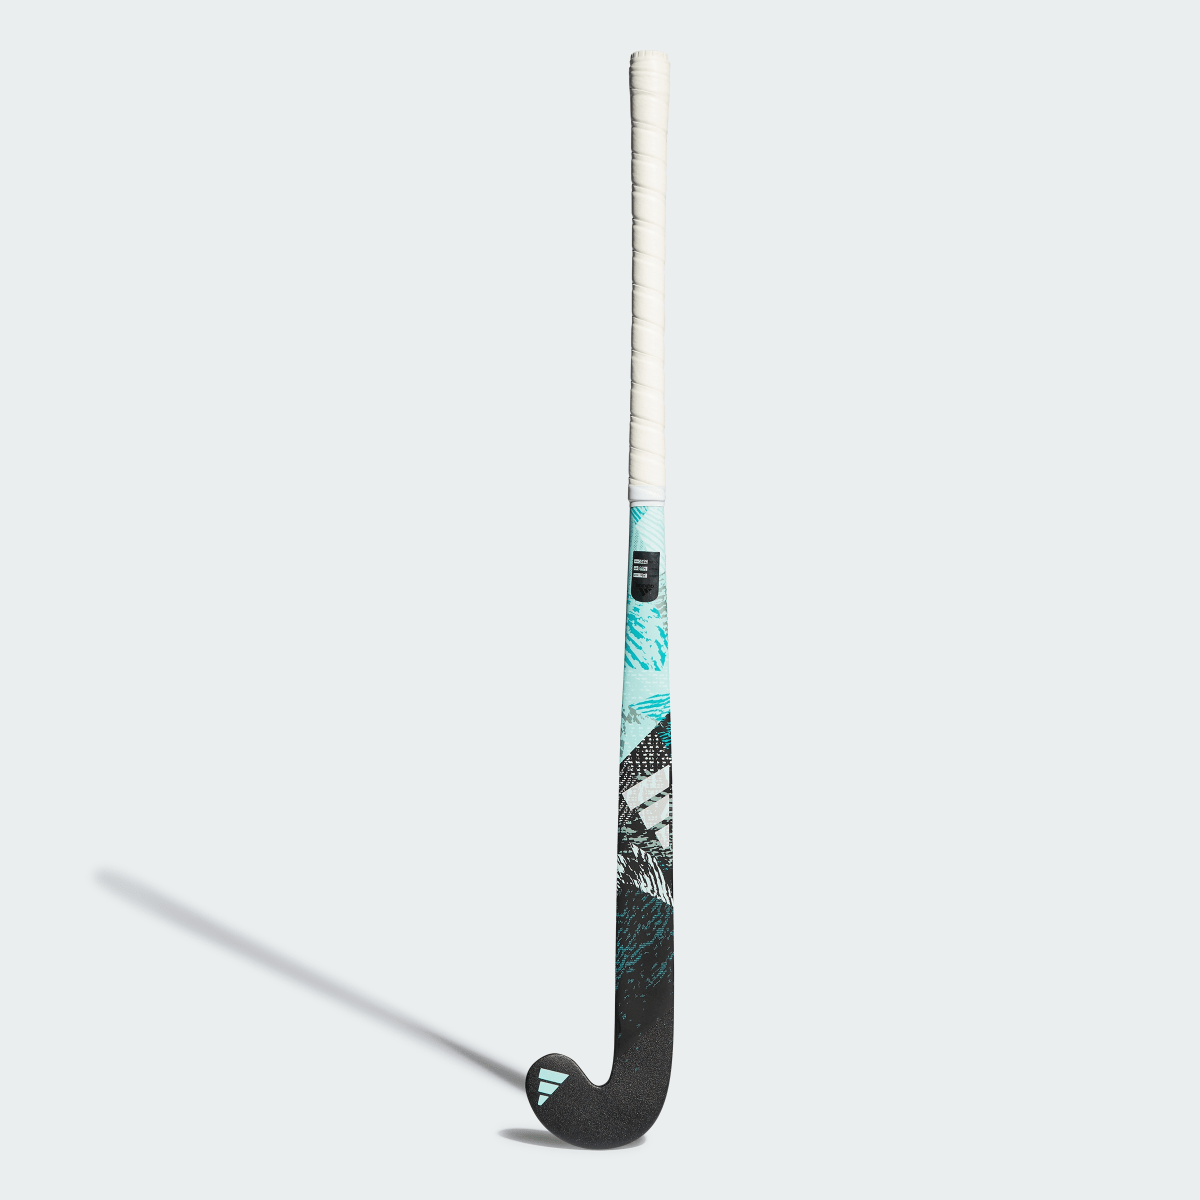 Adidas Youngstar.9 61 cm Field Hockey Stick. 3